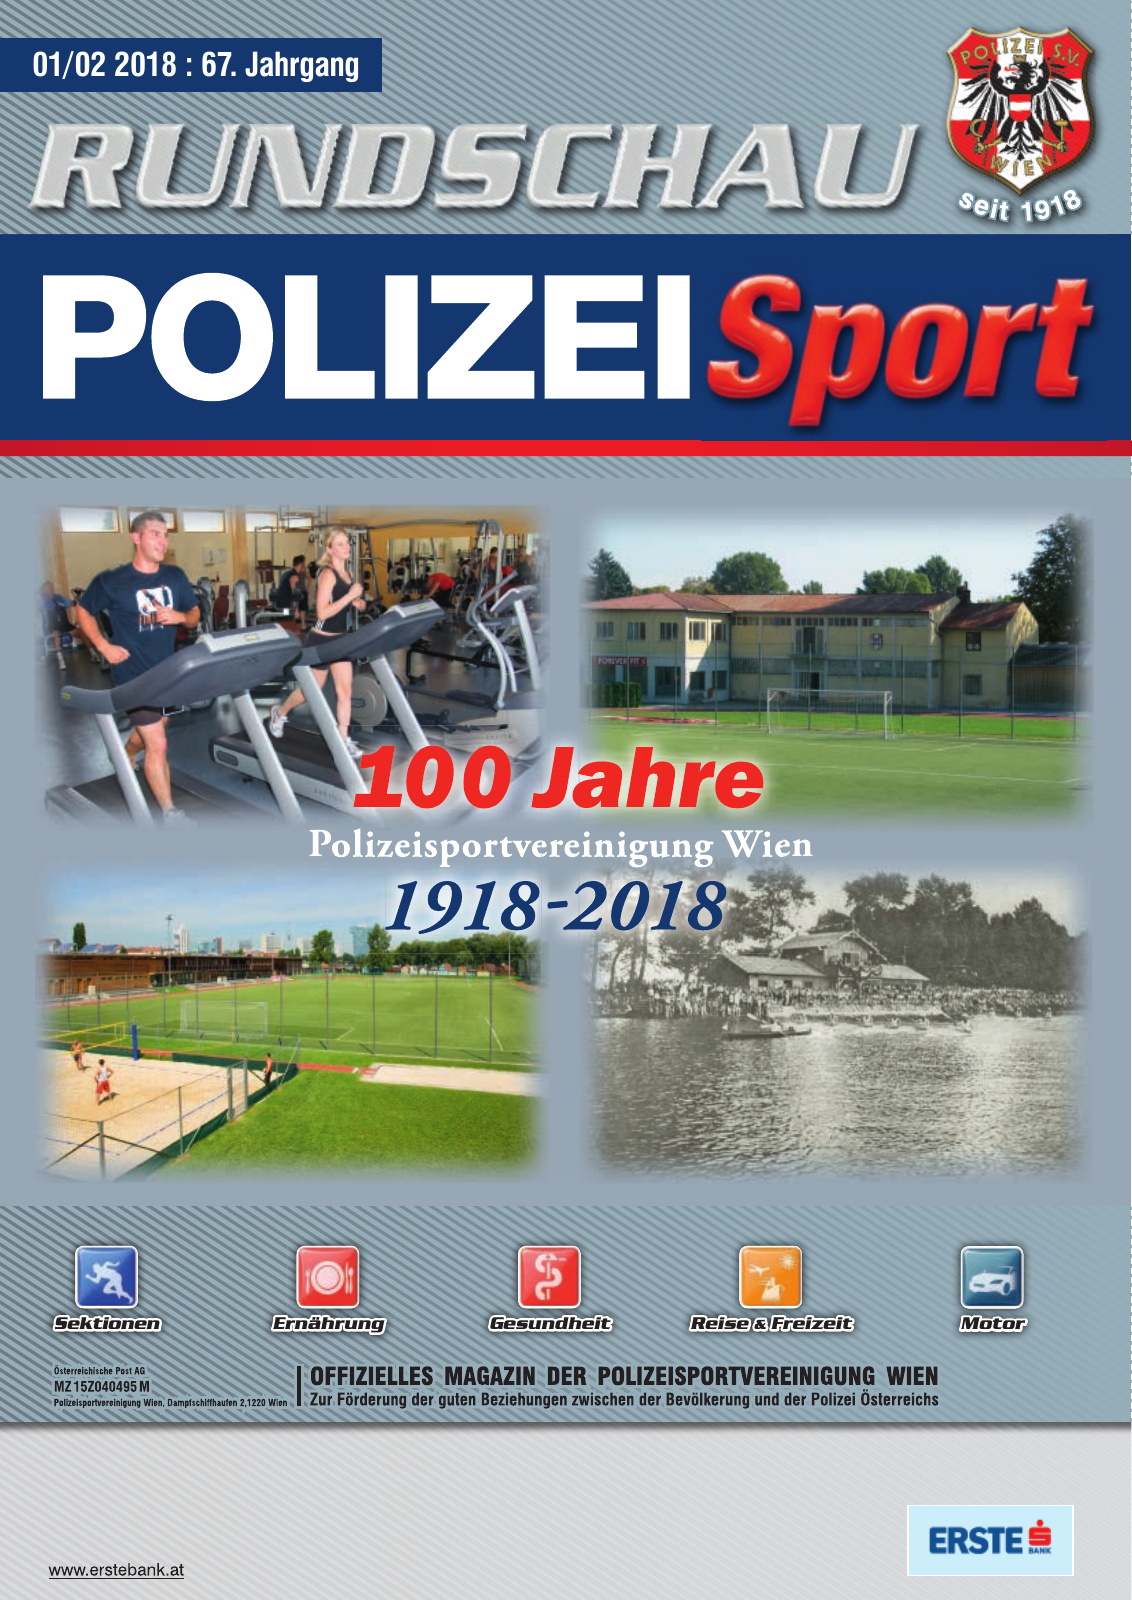 Vorschau Rundschau Polizei Sport 01-02/2018 Seite 1